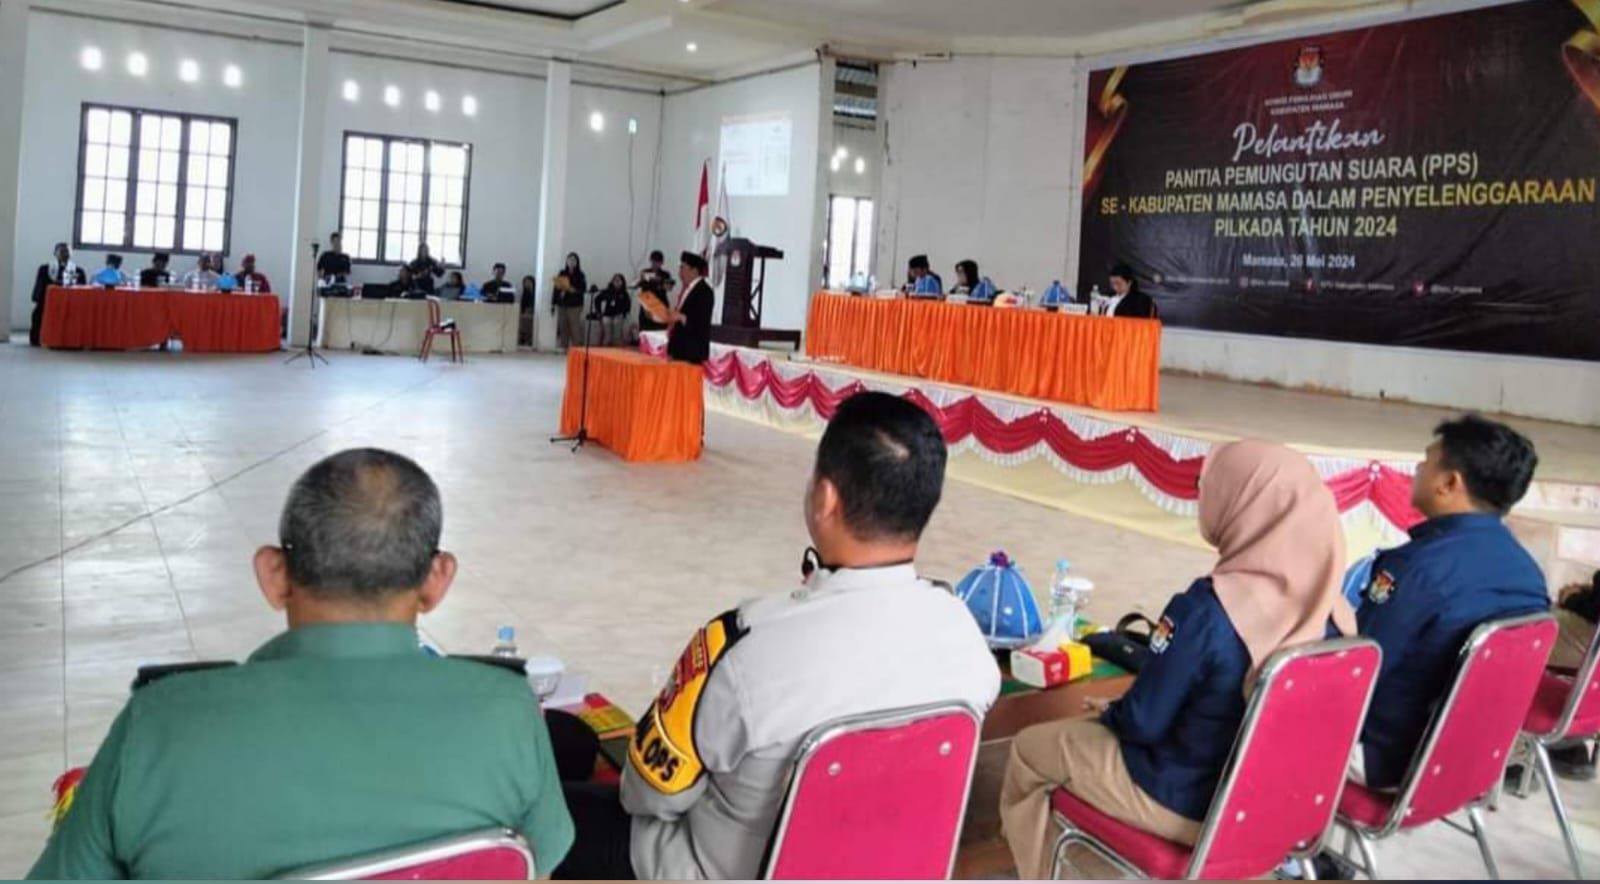 Komisi Pemilihan Umum (KPU) Kabupten Mamasa, Sulawesi Barat (Sulbar) melantik 543 Panitia Pemungutan Suara (PPS) yang tersebar di 17 kecamatan, 168 desa dan 13 kelurahan se-Kabupaten Mamasa